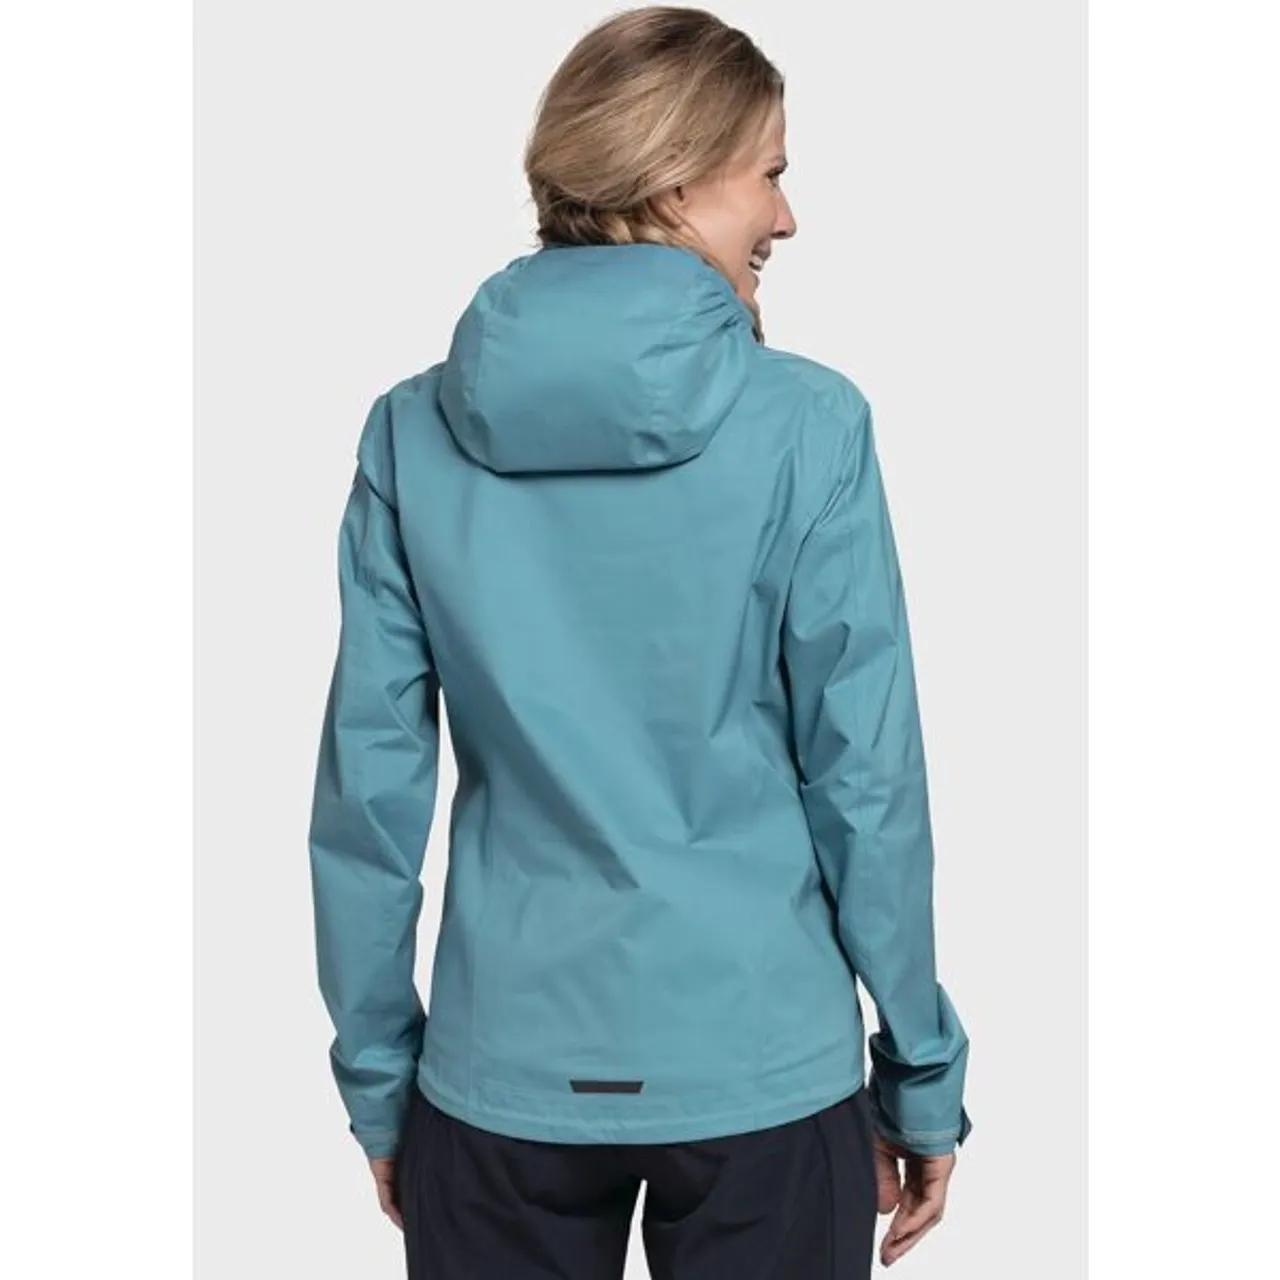 Regenjacke SCHÖFFEL "2.5L Jacket Tarvis L" Gr. 38, blau (8225, blau) Damen Jacken